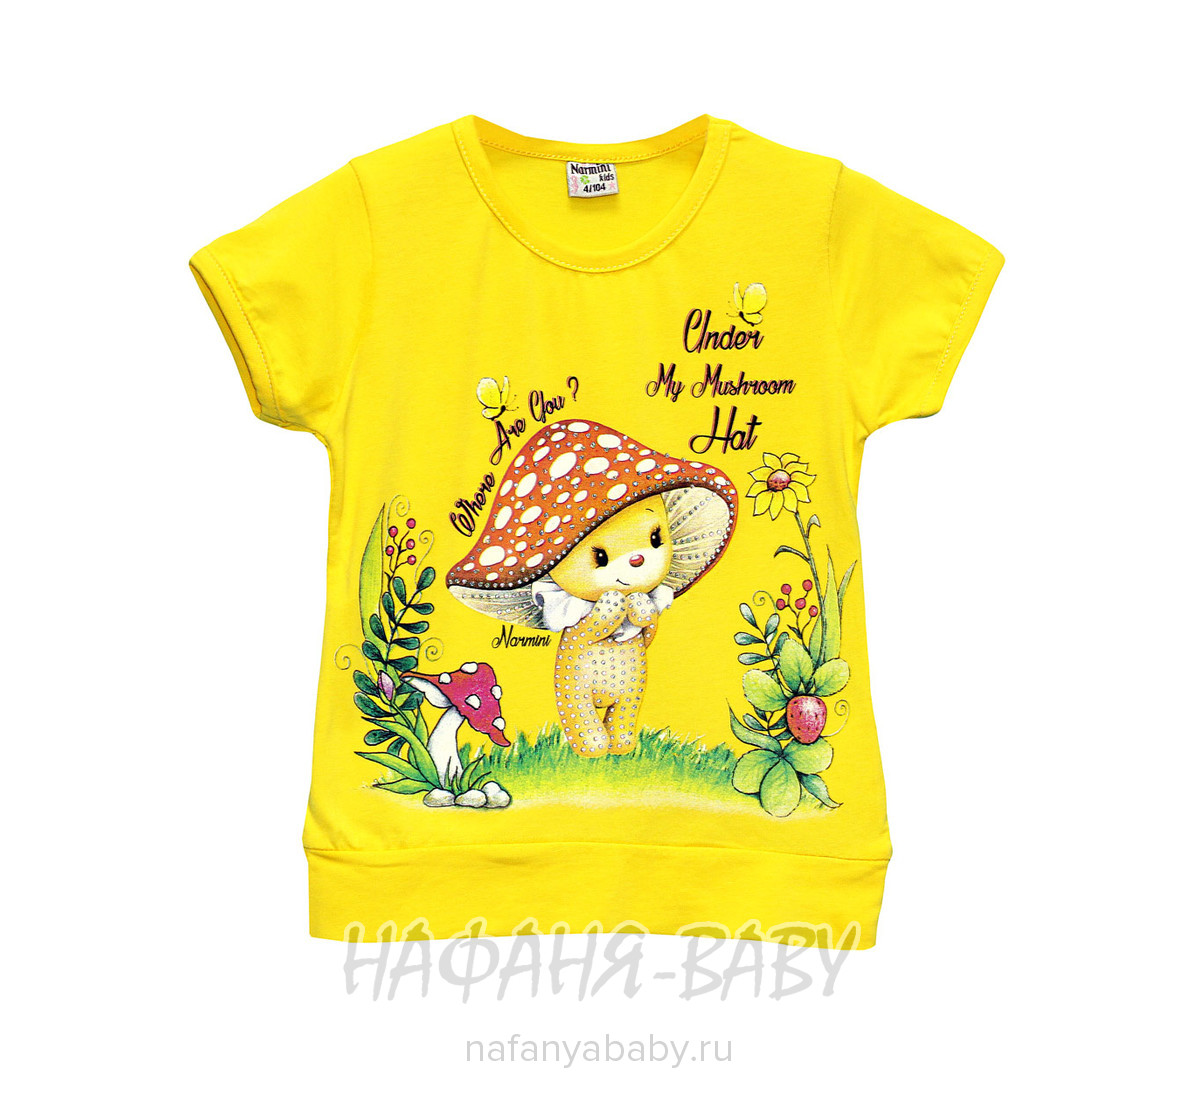 Детская футболка NARMINI арт: 5509, 1-4 года, оптом Турция